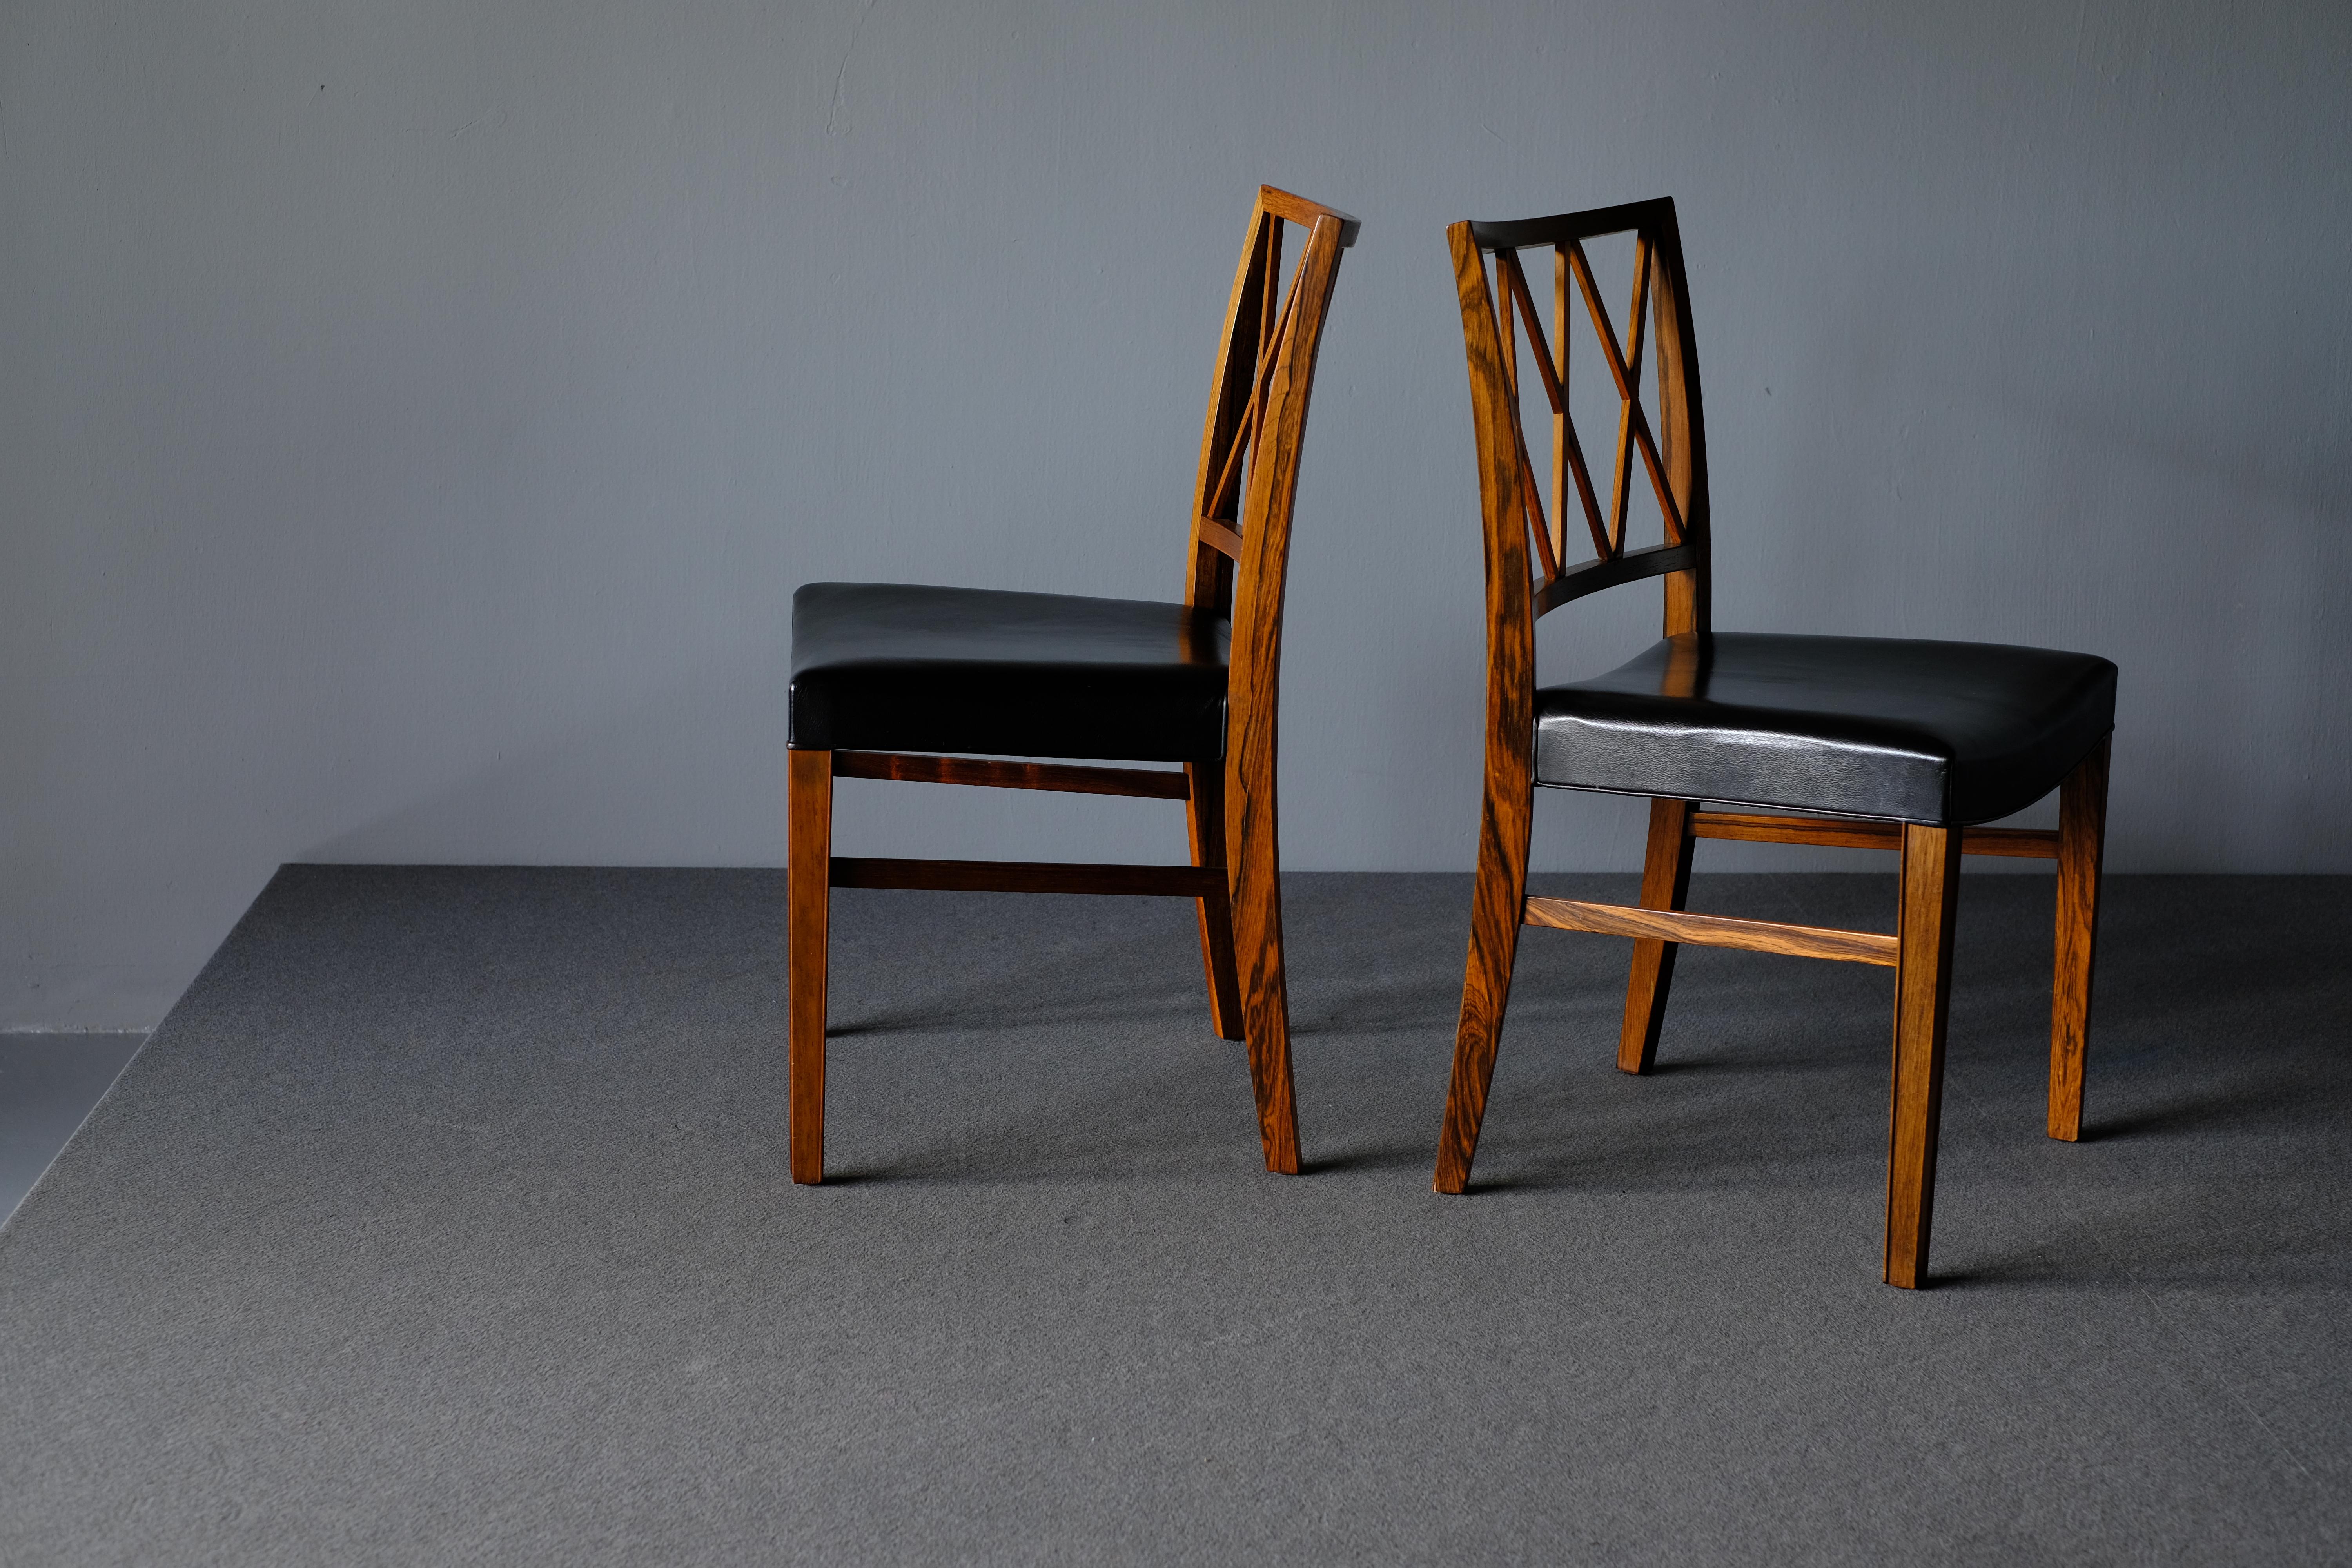 Schönes Paar Esszimmerstühle aus brasilianischem Palisanderholz, entworfen von Ole Wanscher und hergestellt von der Tischlerei A.J. Iversen. Die Stücke haben raffinierte, leicht gespreizte Beine mit wunderschönen Tischlerdetails und sind wunderbar